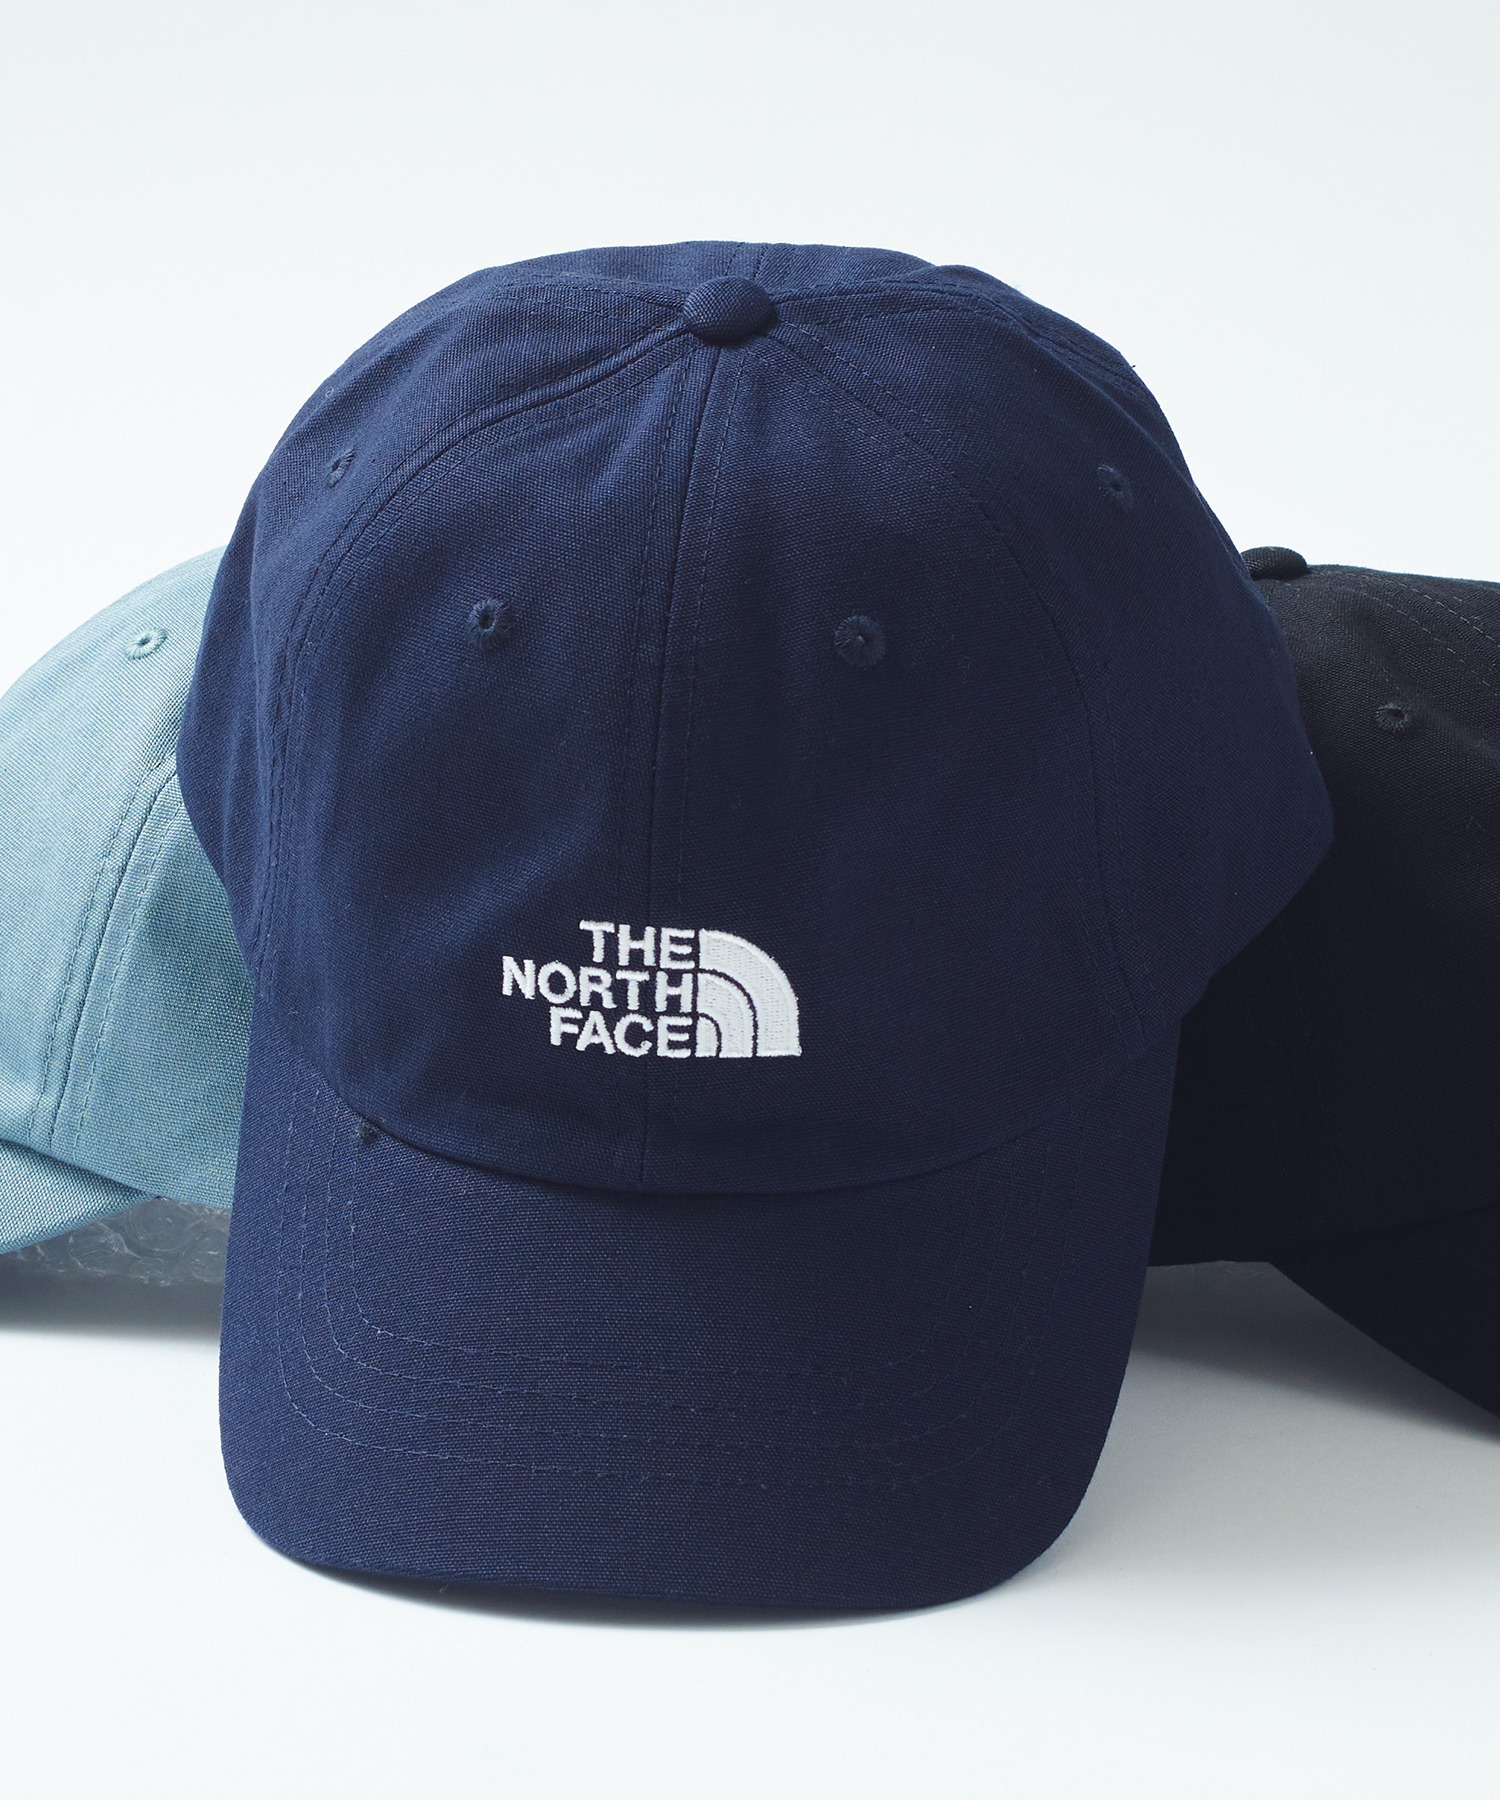 THE NORTH FACE 3点セット Tシャツ オーバーオール 帽子